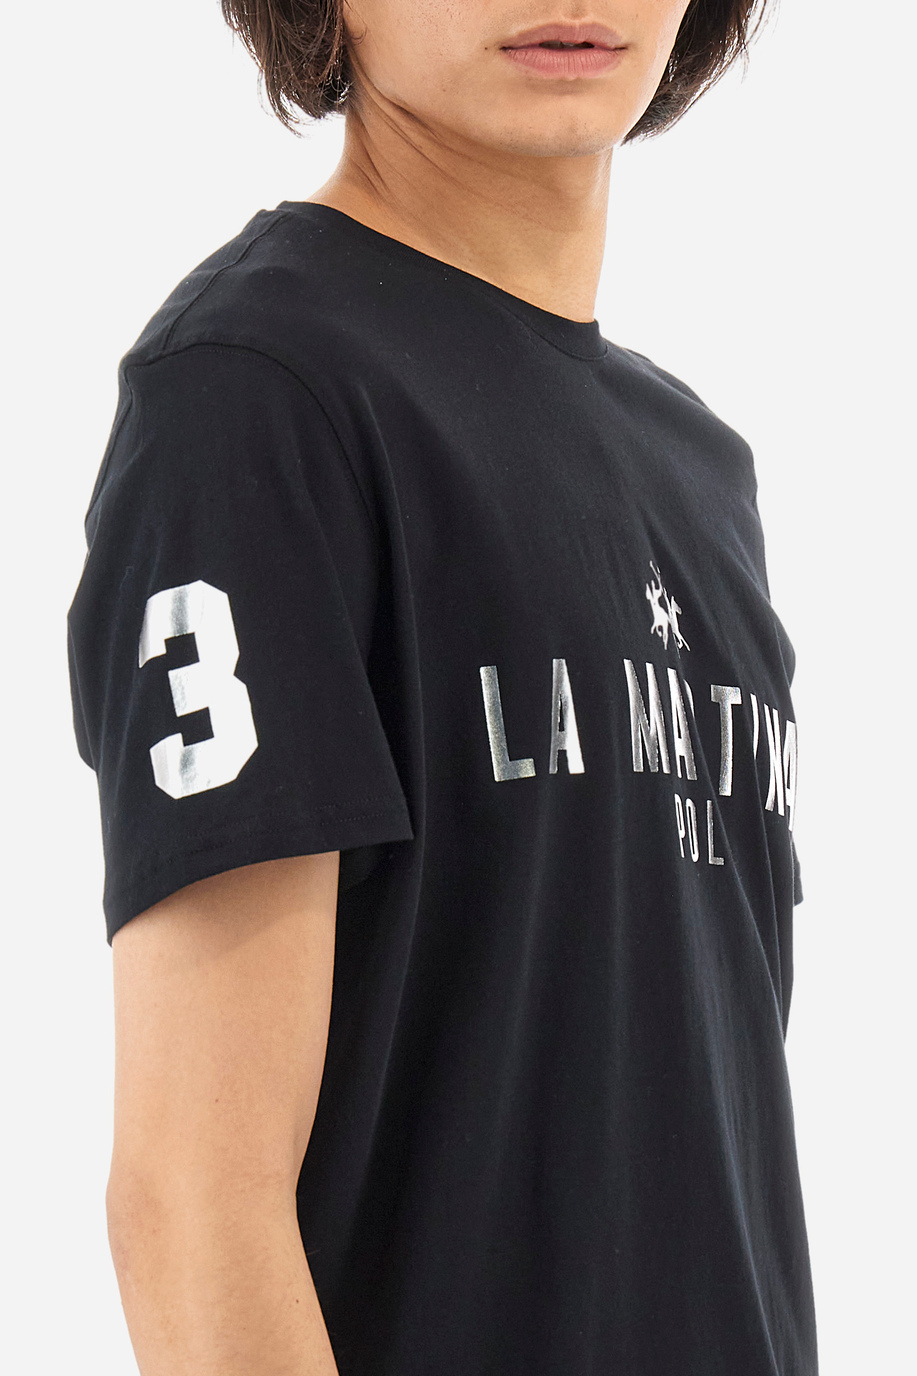 Regular-fit cotton T-shirt - Ysmael - New Arrivals Men | La Martina - Official Online Shop